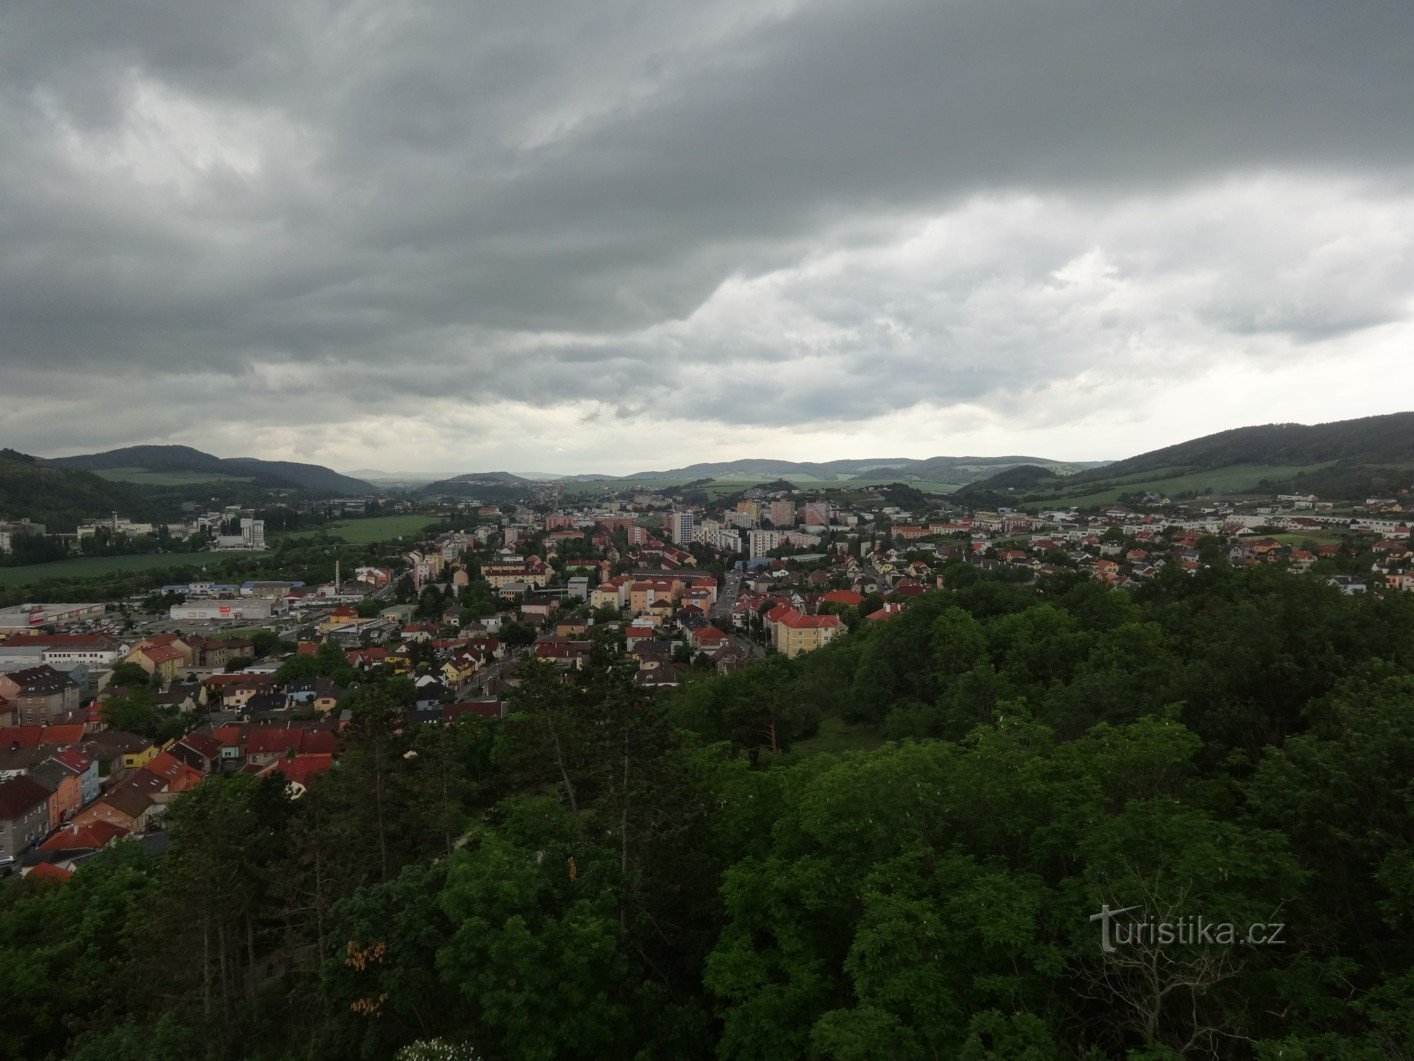 Aussichtsturm aus Beton auf Městská hora in Beroun